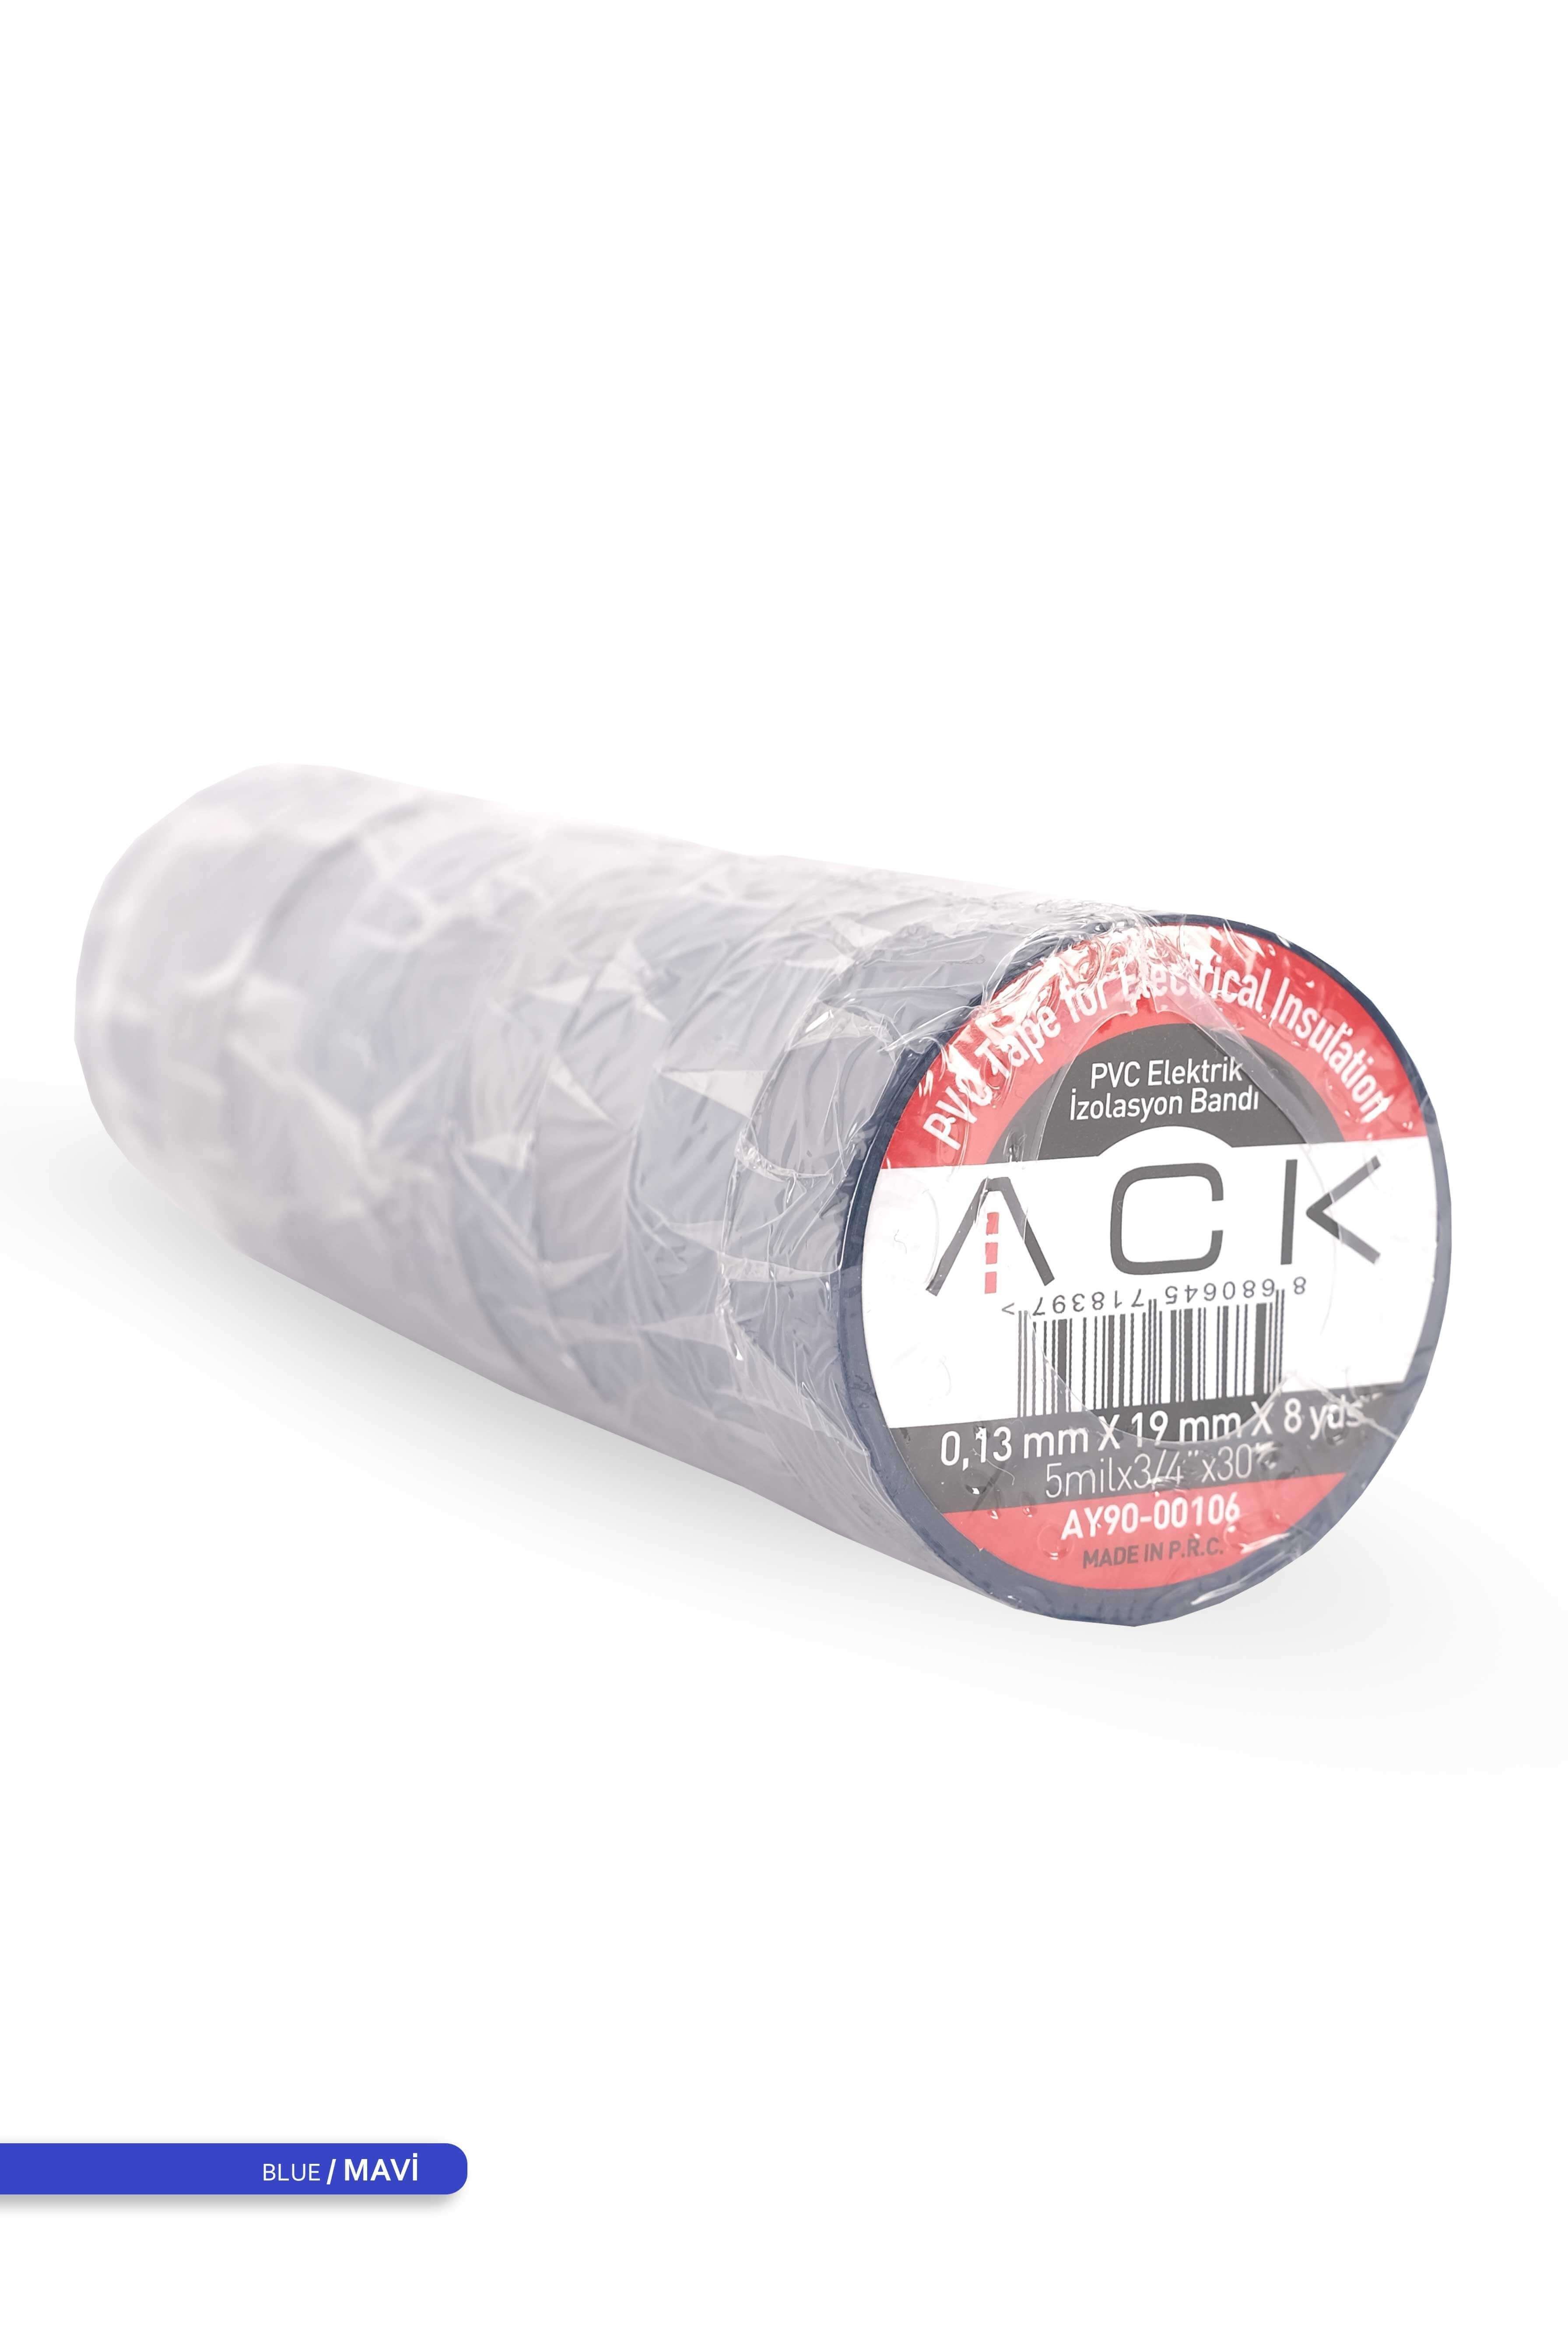 ACK PVC Elektrik İzolasyon Bandı Mavi 8m